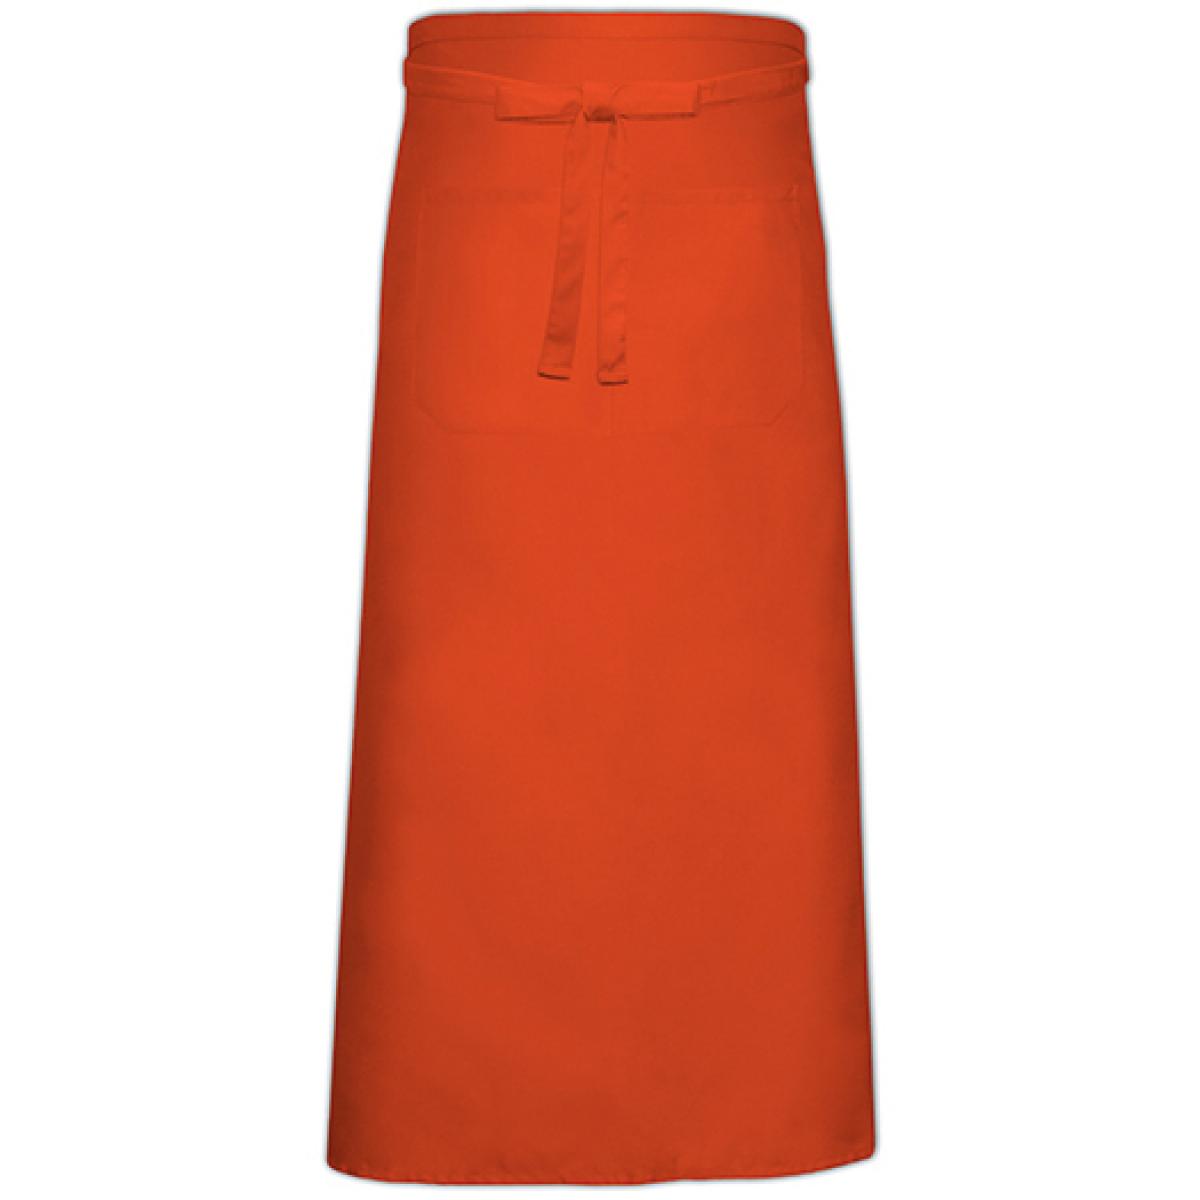 Hersteller: Link Kitchen Wear Herstellernummer: FS100120 Z Artikelbezeichnung: Bistro Apron XL with Front Pocket - 120 x 100 cm Farbe: Orange